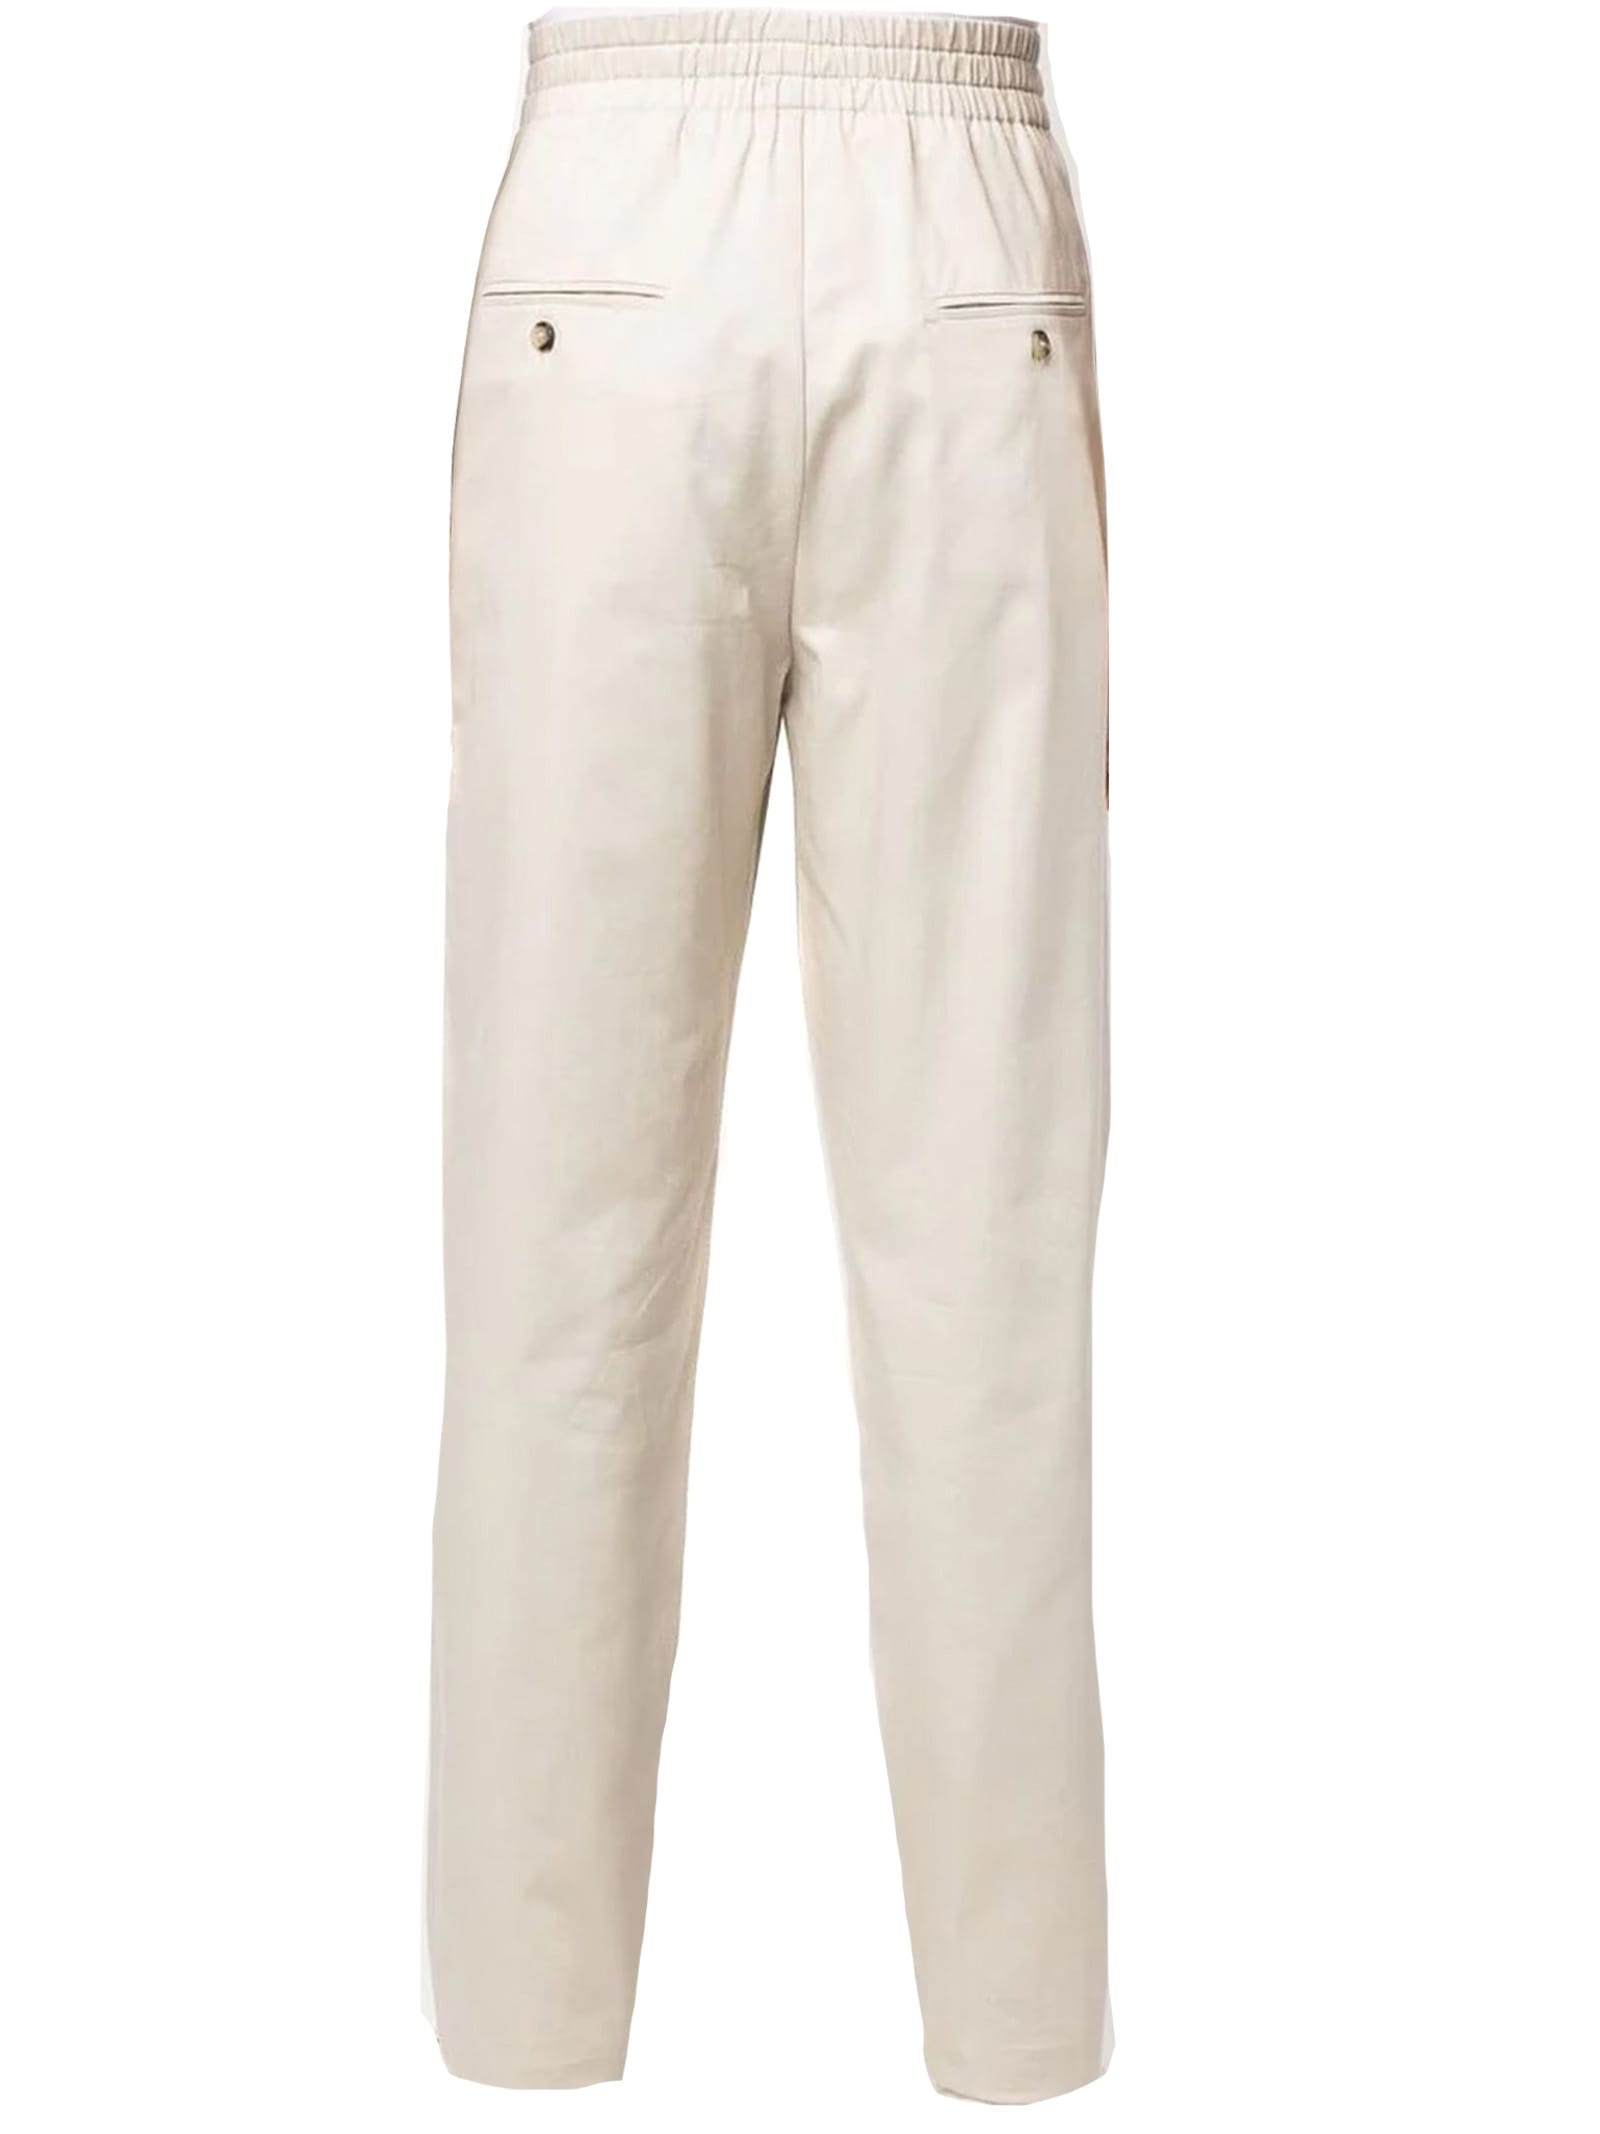 Shop Isabel Marant Beige Cotton Trousers